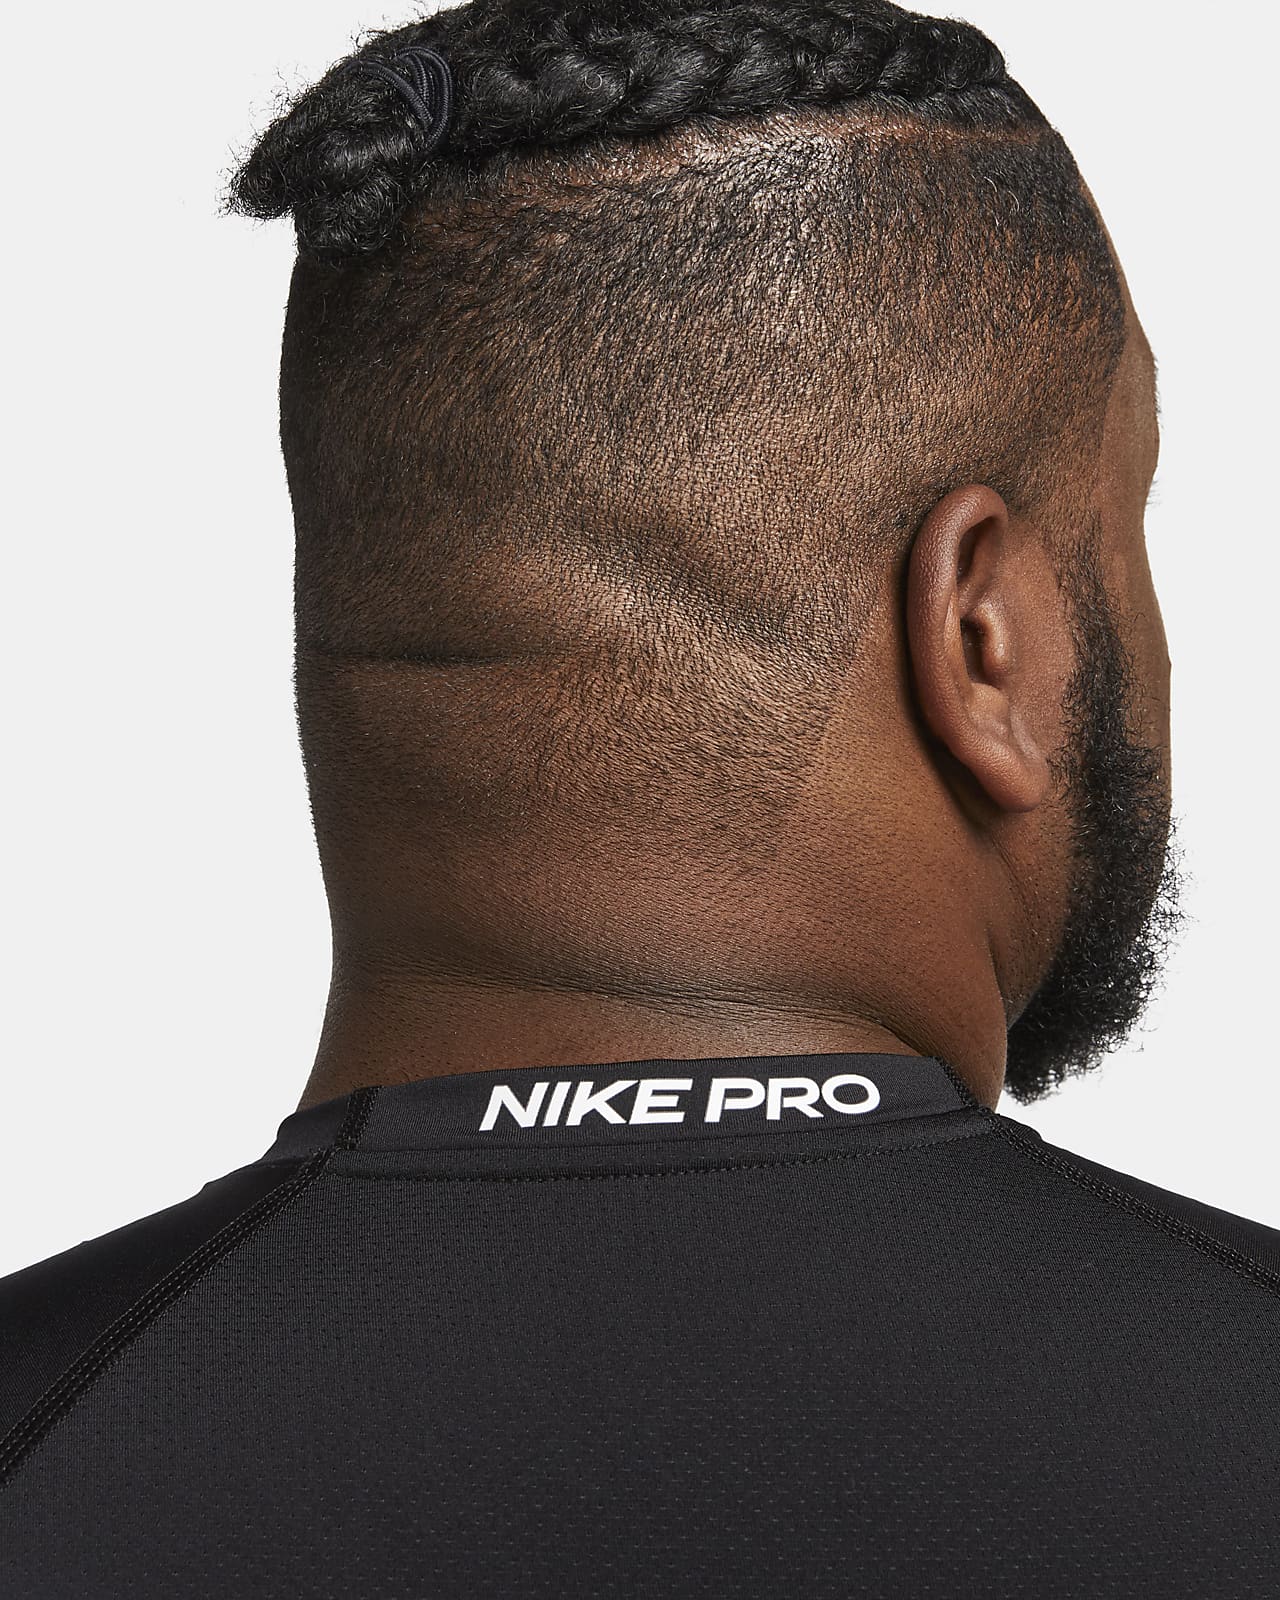 Camiseta sin y corte ajustado para hombre Nike.com